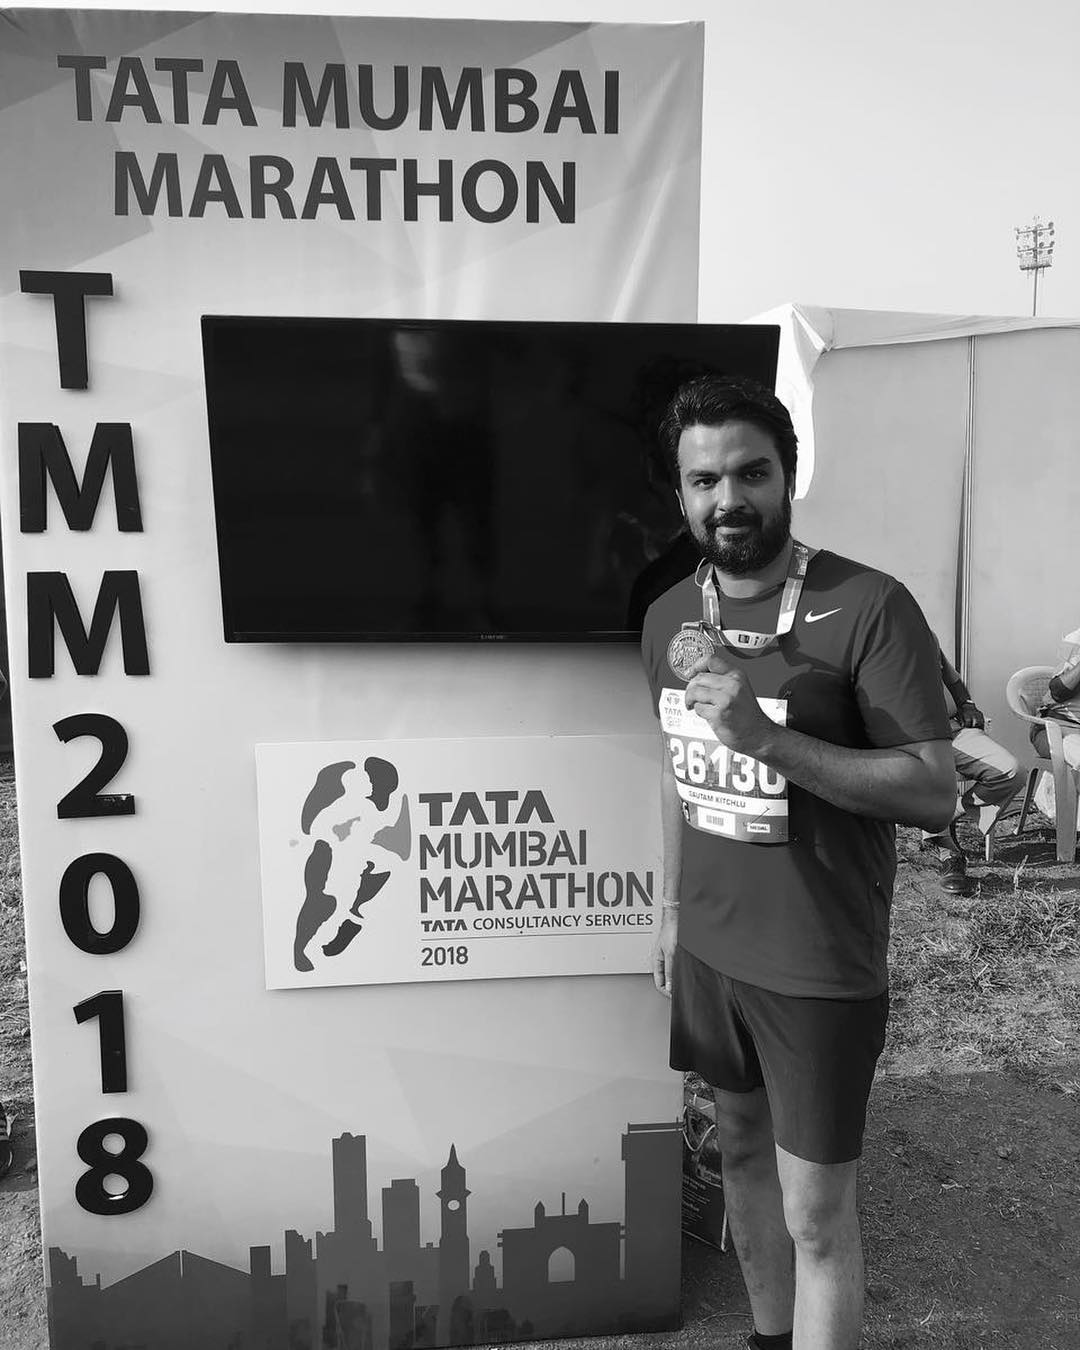 Gautam Kitchlu participated in the Tata Mumbai Marathon 